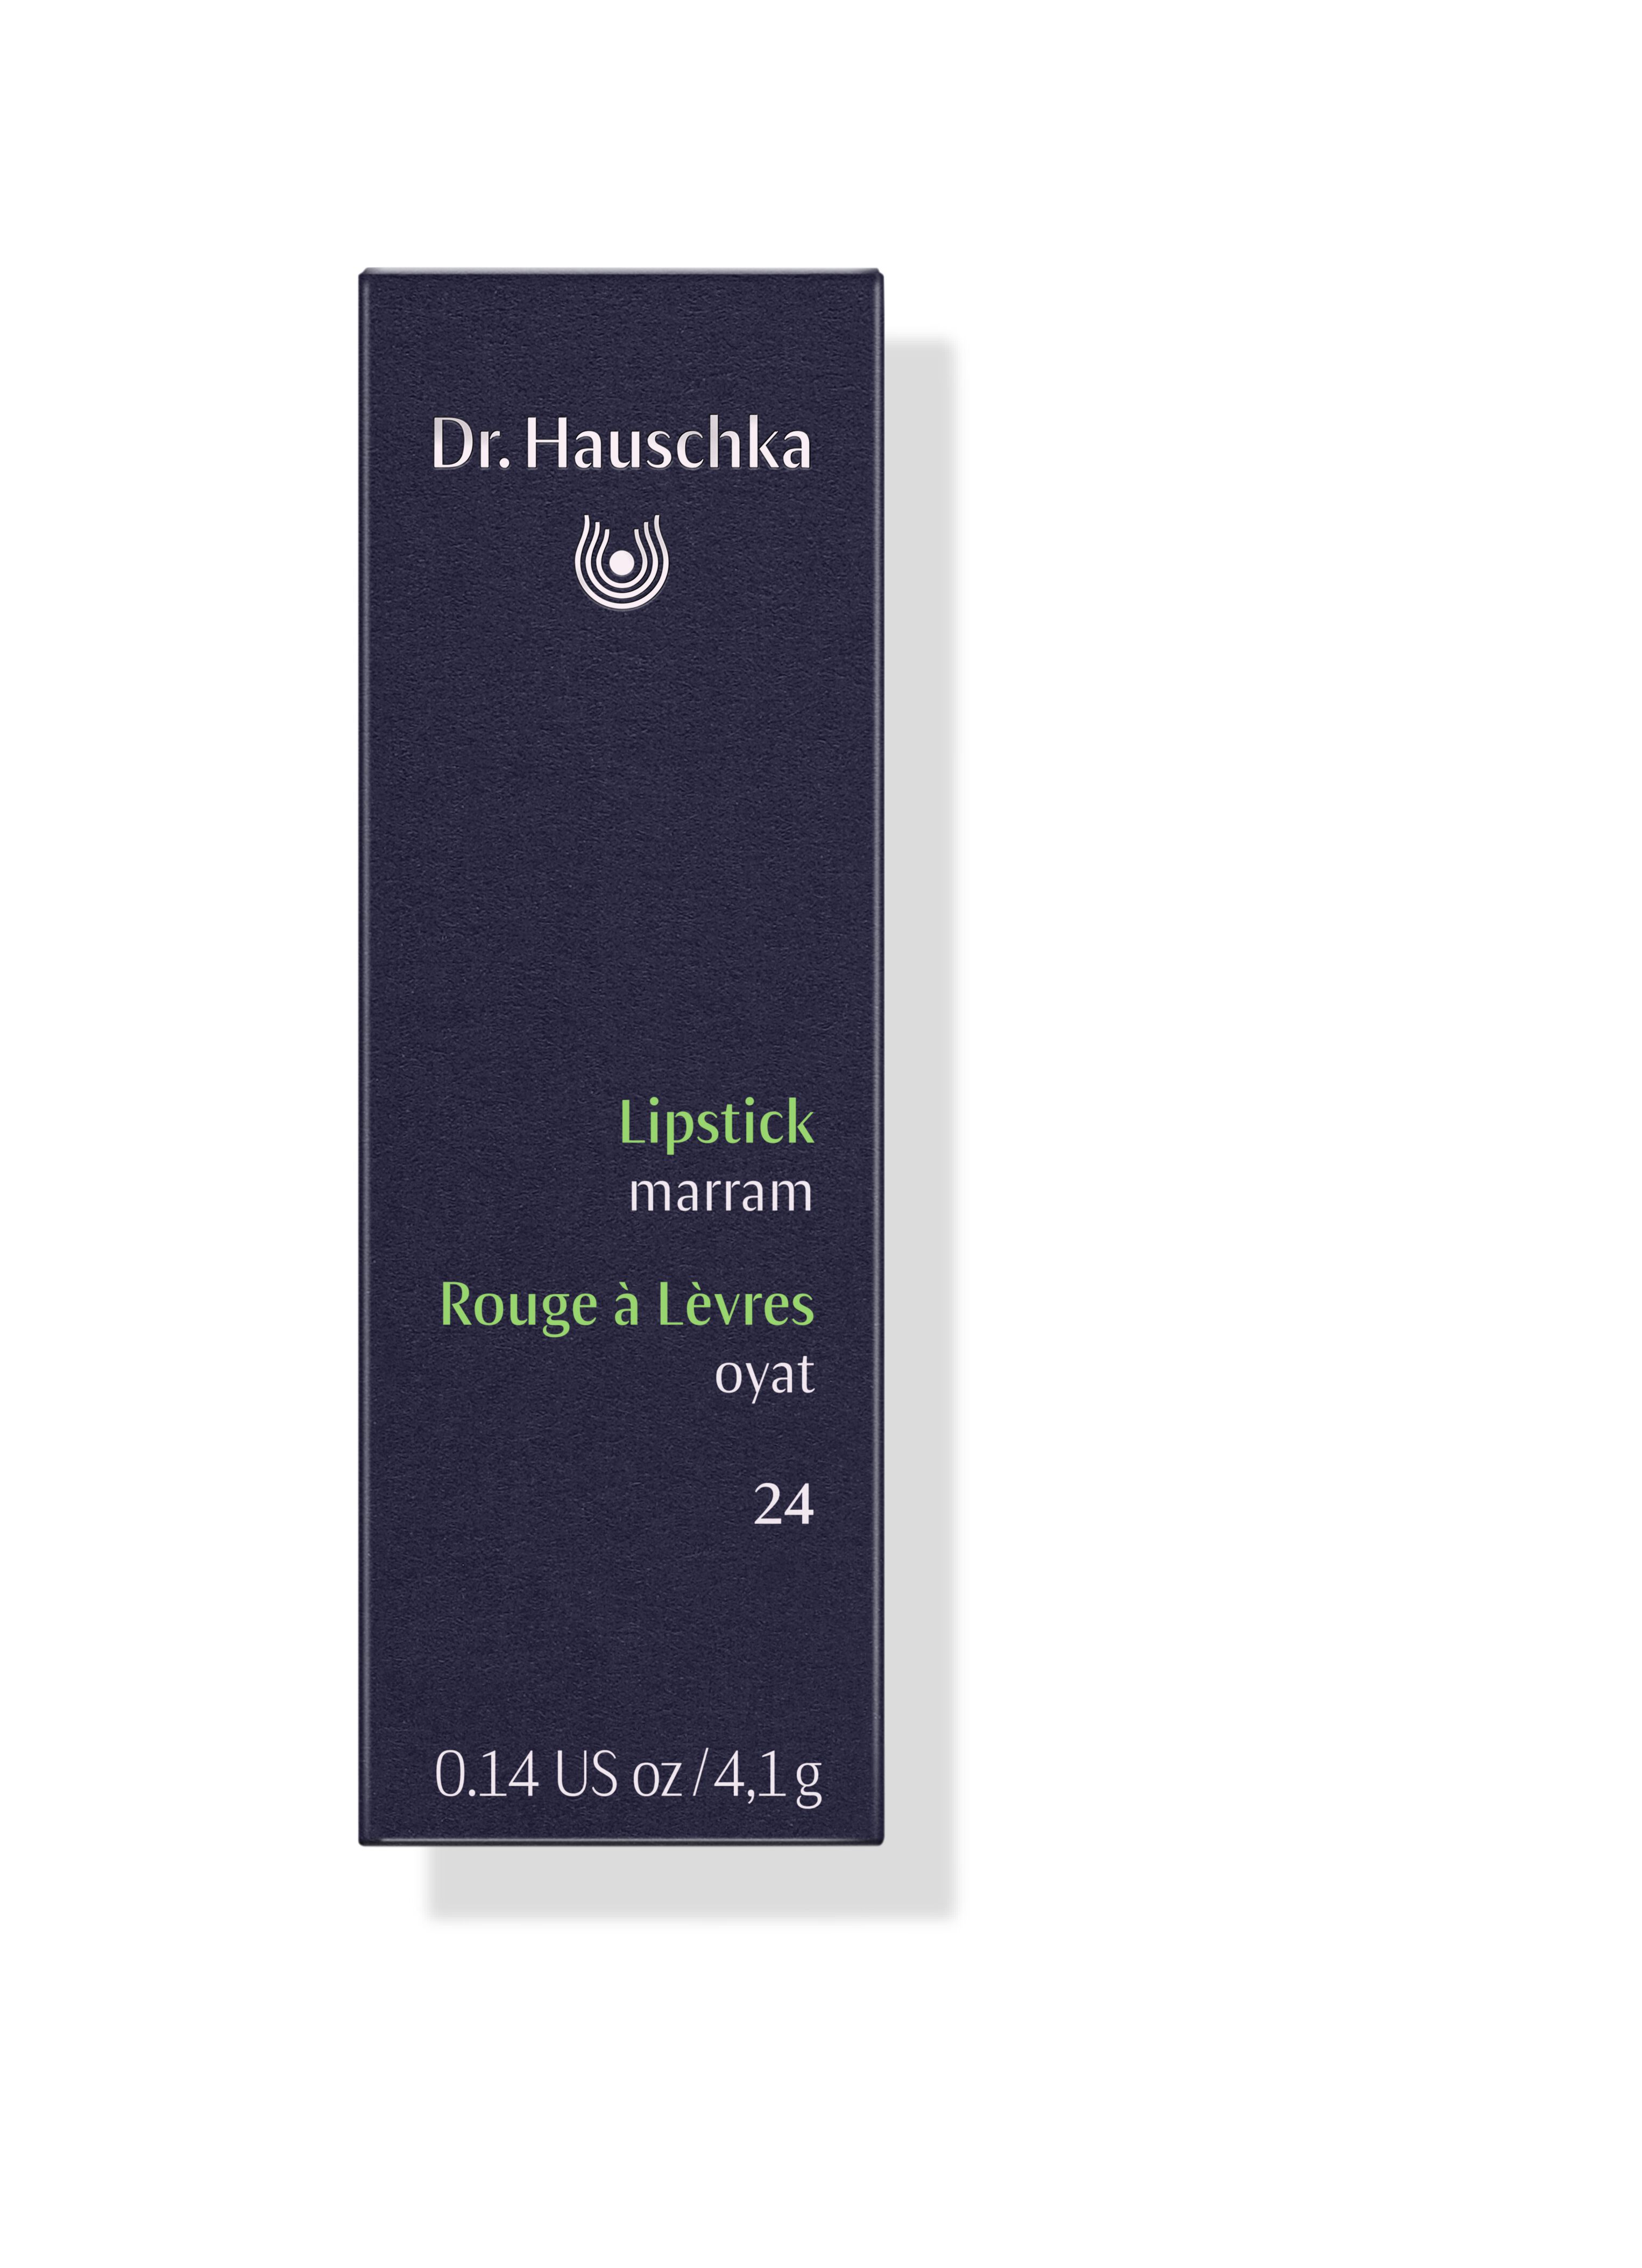 DR.HAUSCHKA Lipstick 24 marram